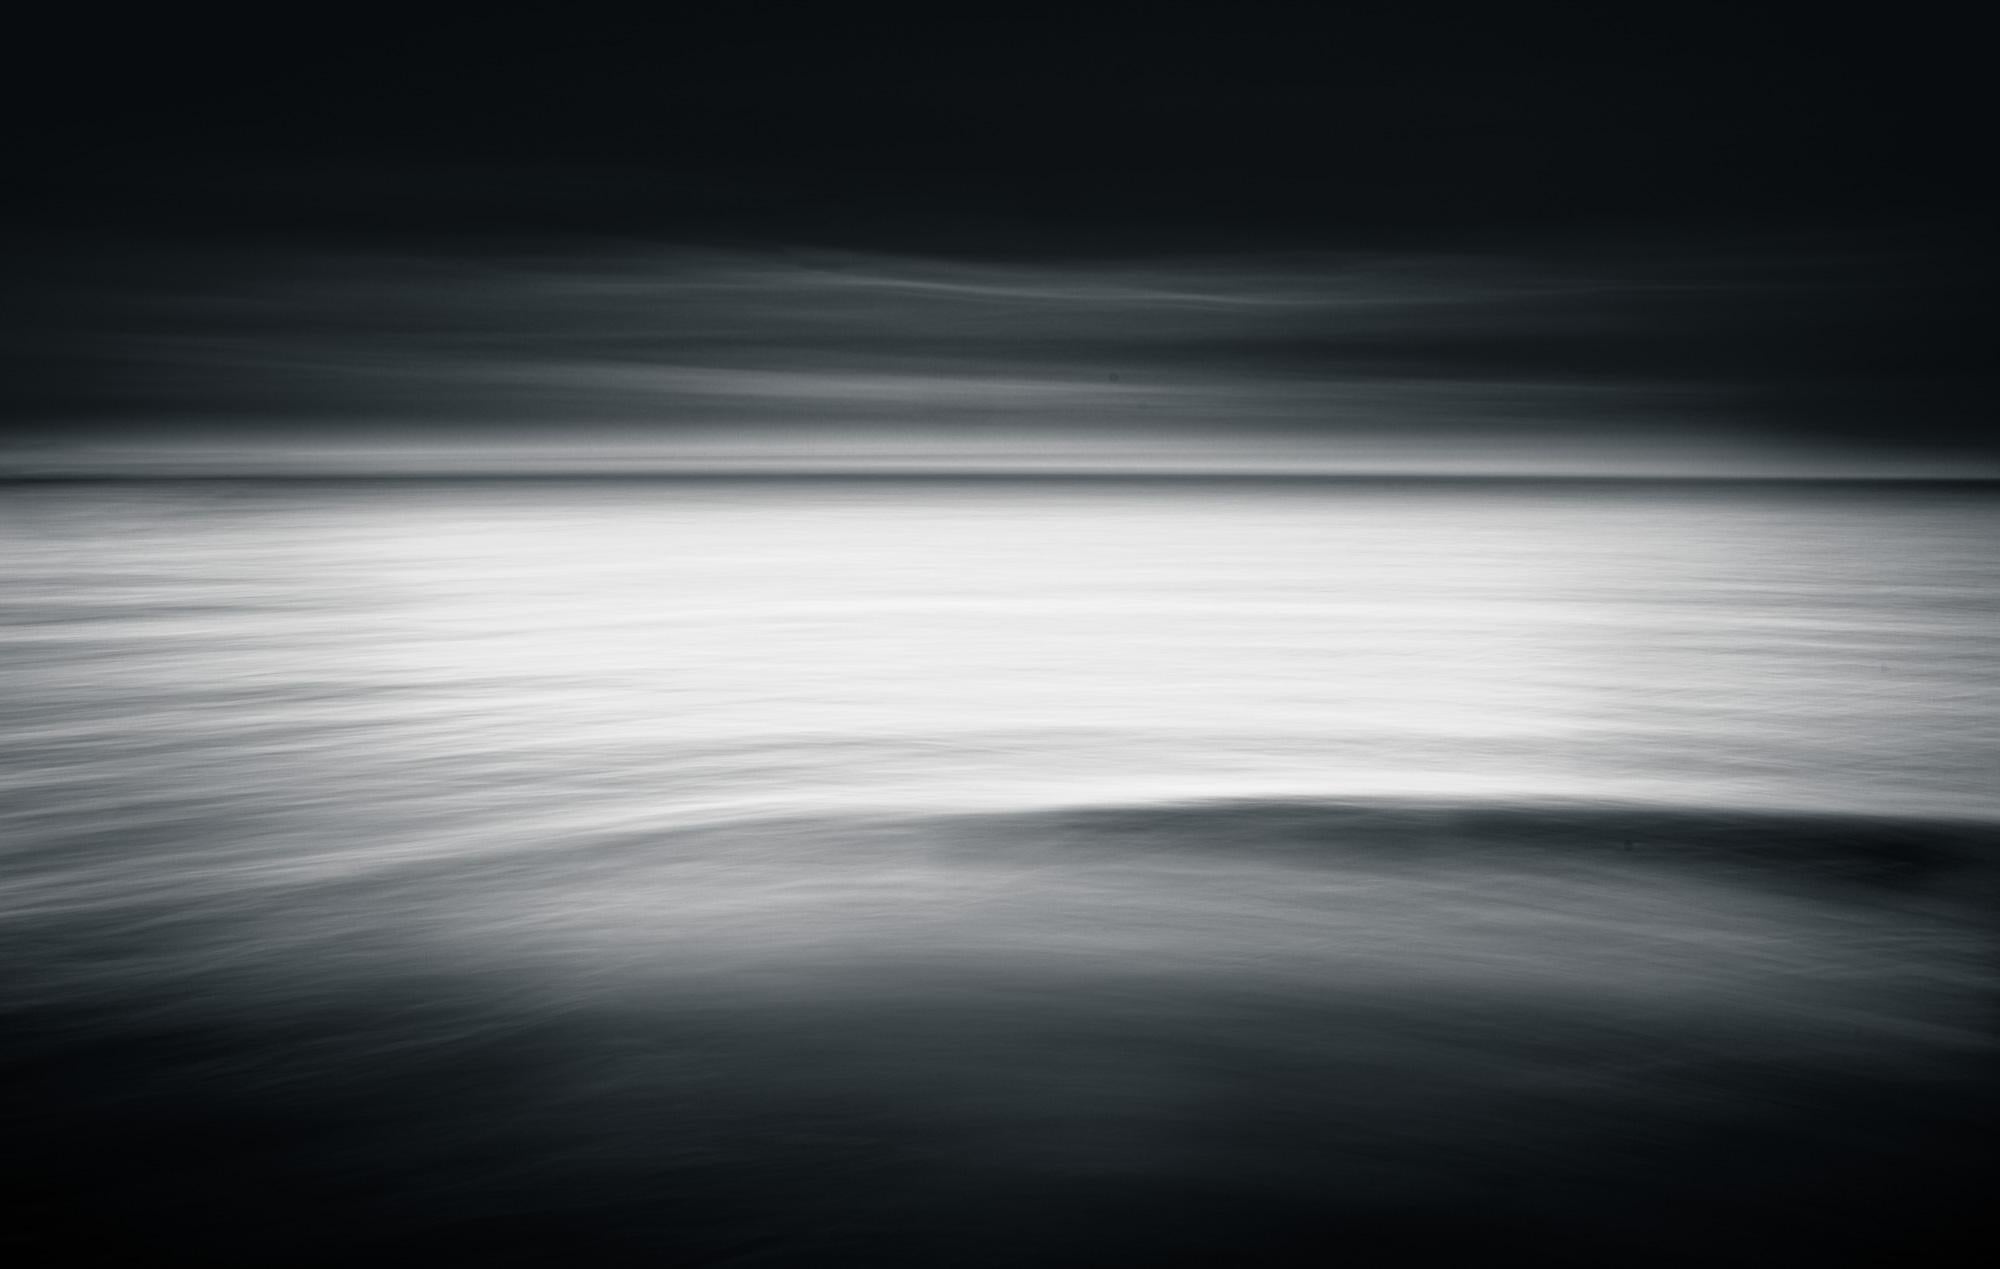 Black and White Photograph Howard Lewis - Édition limitée 1/3 Photographie en noir et blanc Océan, paysage marin  30 x 40